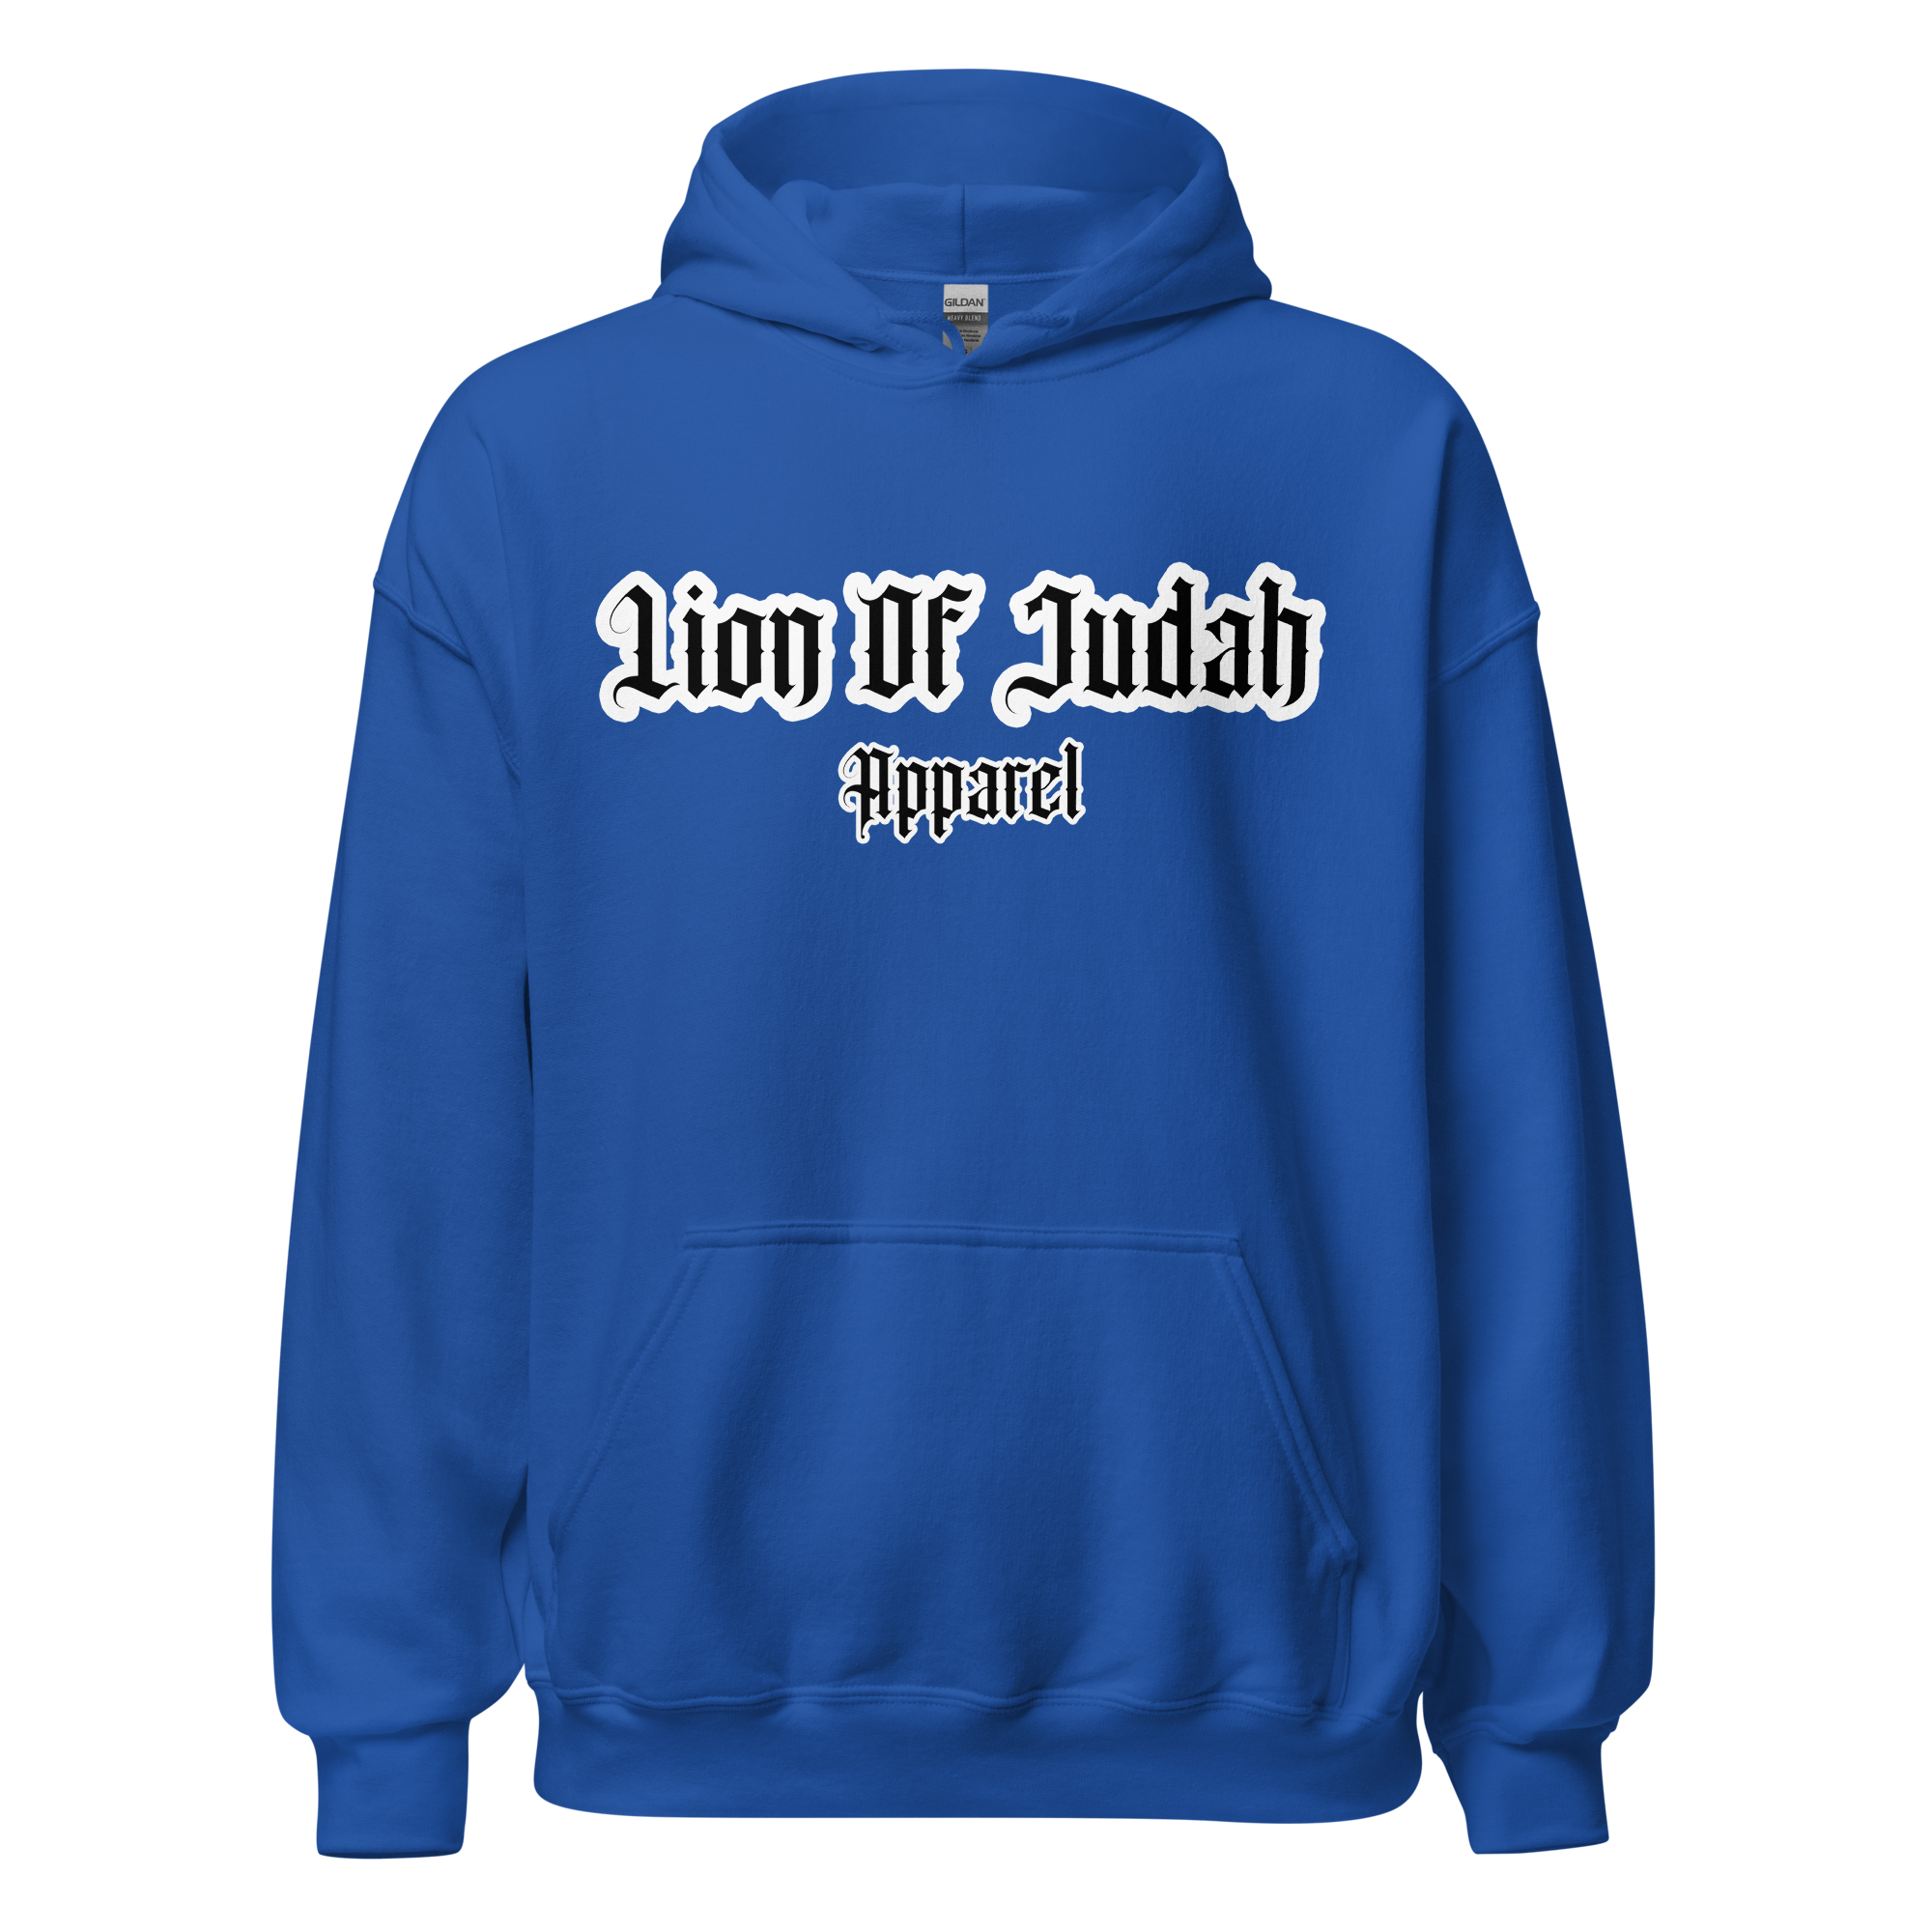 Lion Of Judah Apparel Brand Unisex Hoodie